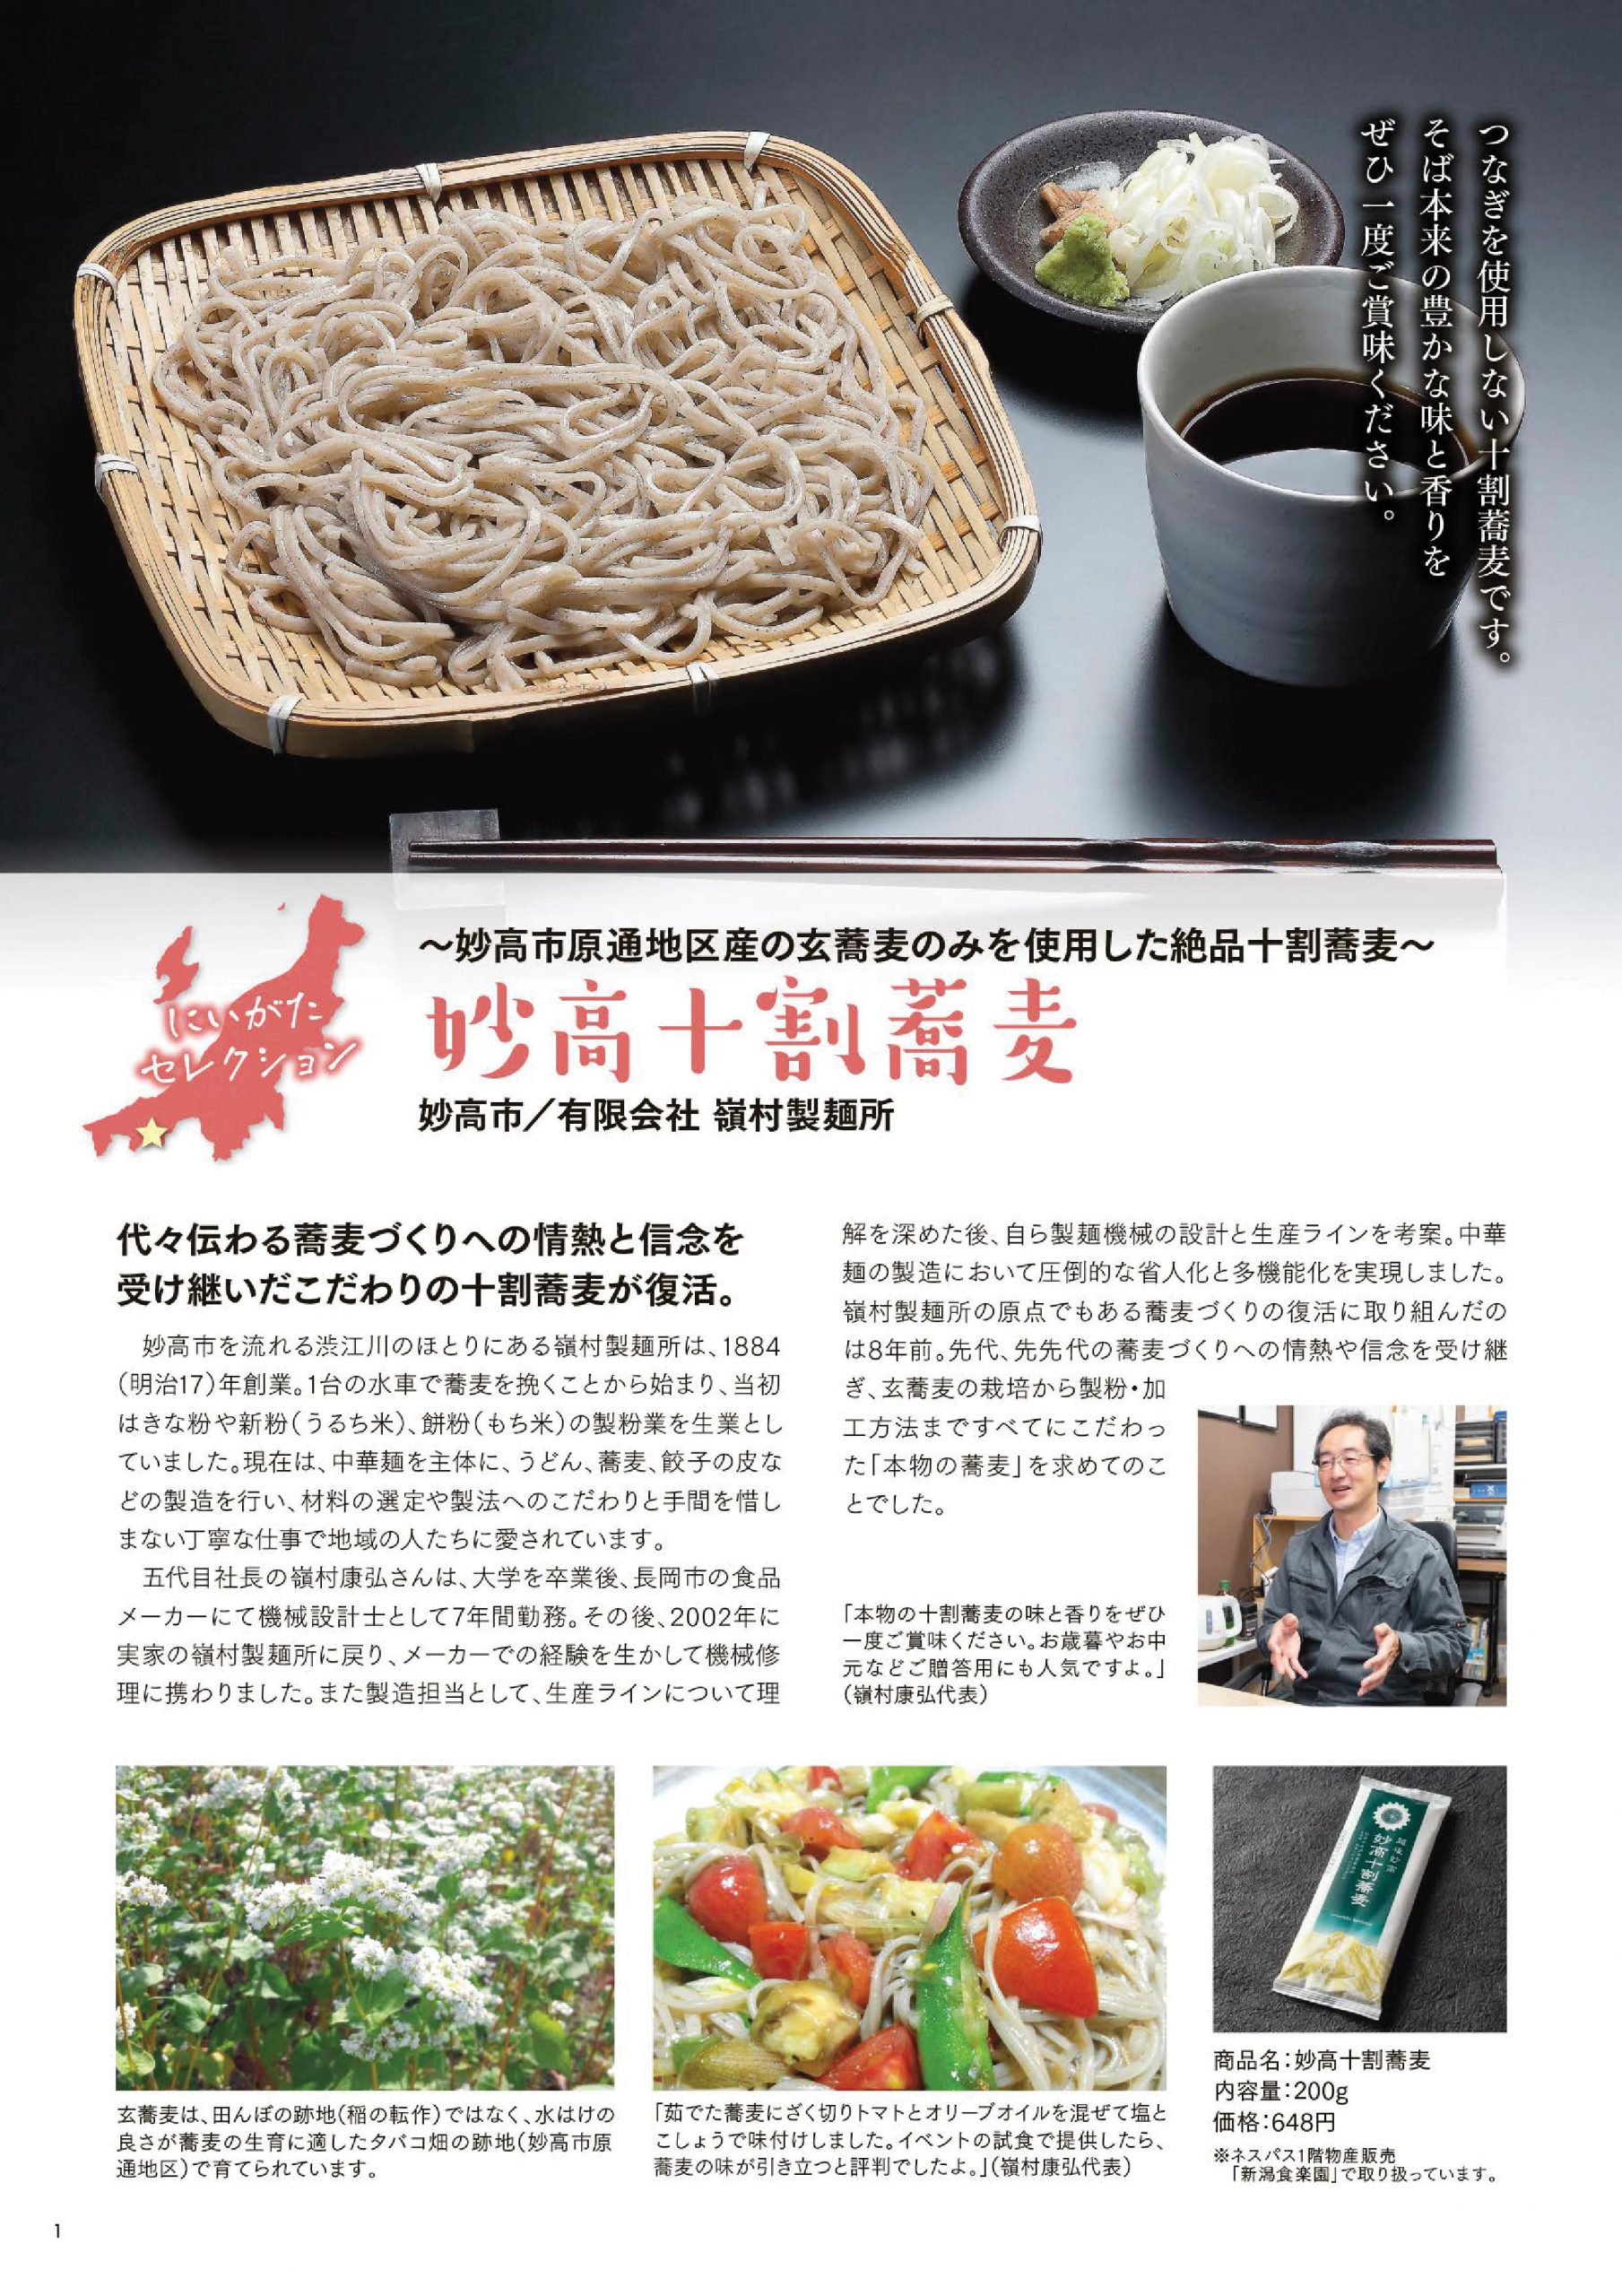 ネスパスニュースに妙高十割蕎麦の紹介が掲載されました 有限会社嶺村製麺所